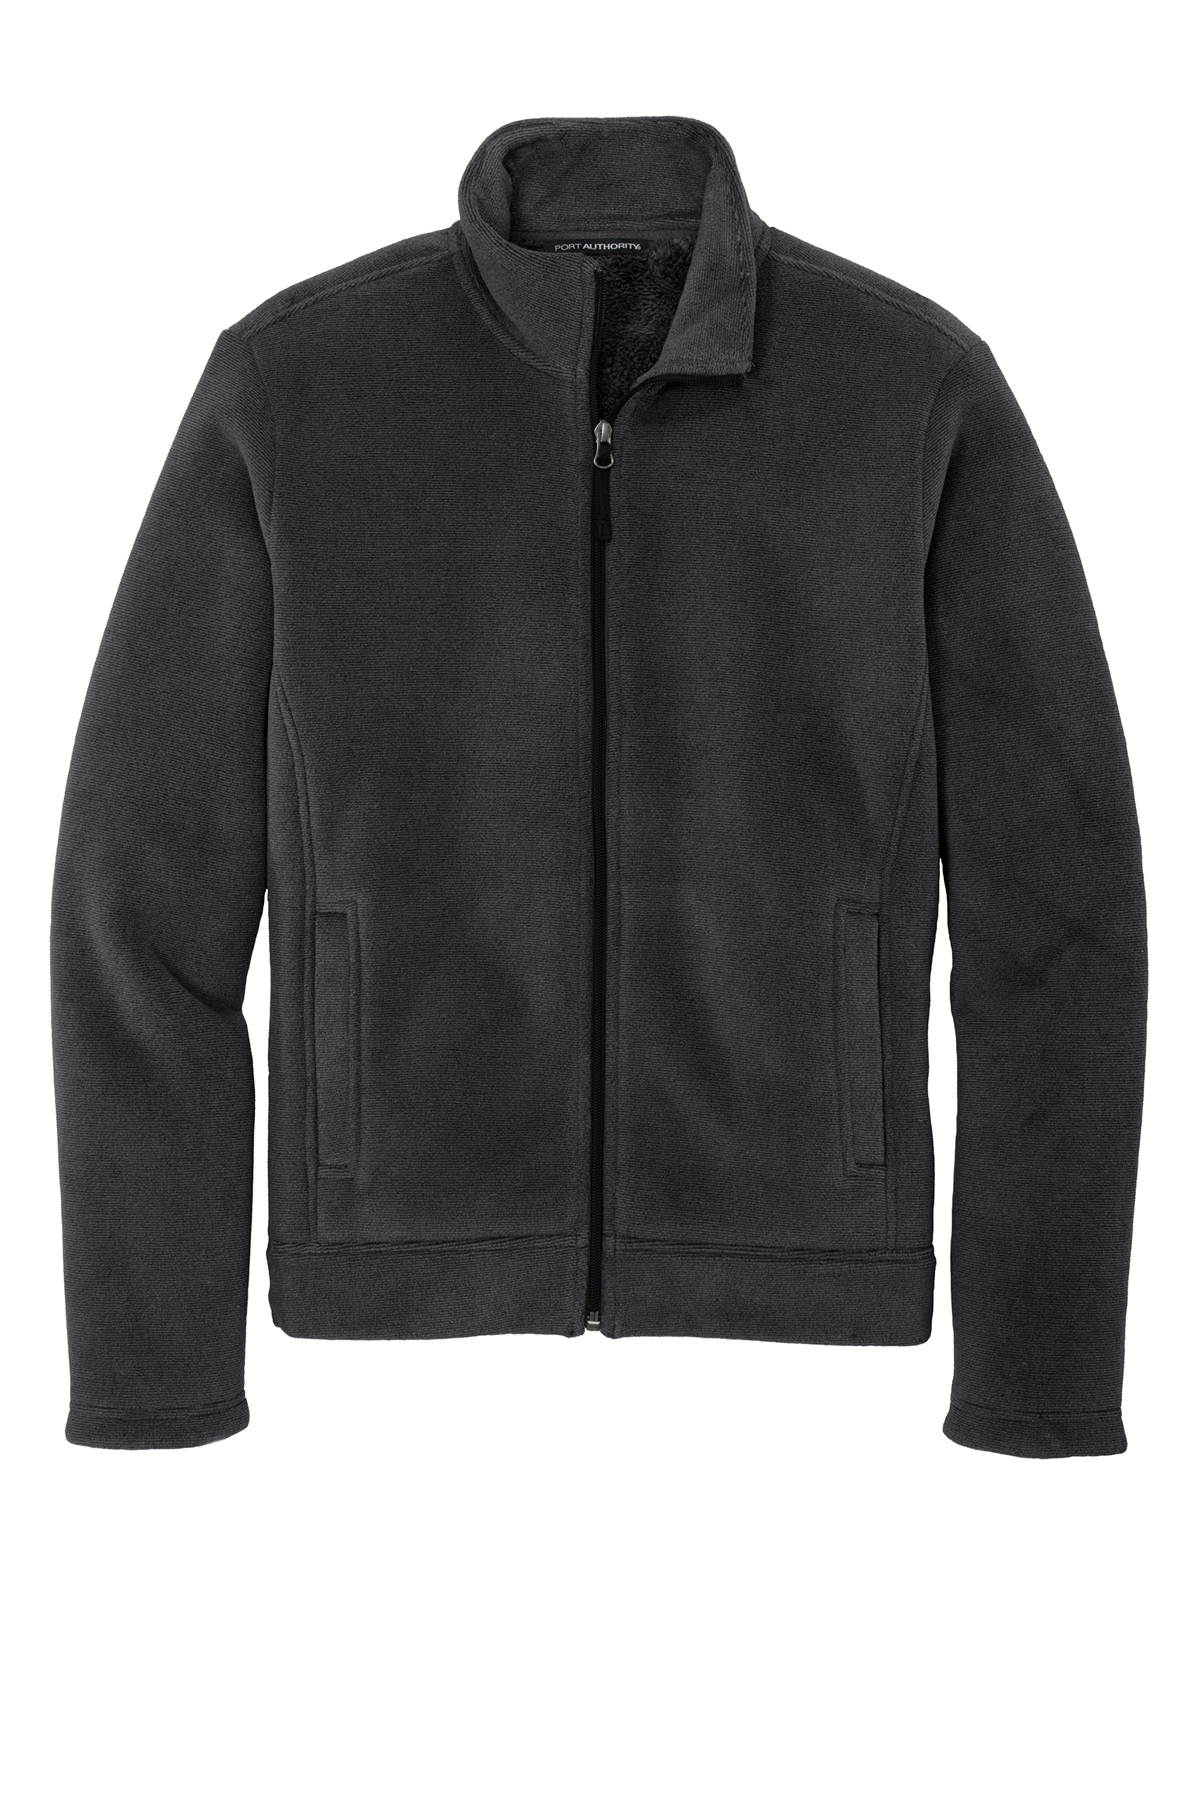 Port Authority Ultra Warm Brushed Fleece Jacket | Product | SanMar